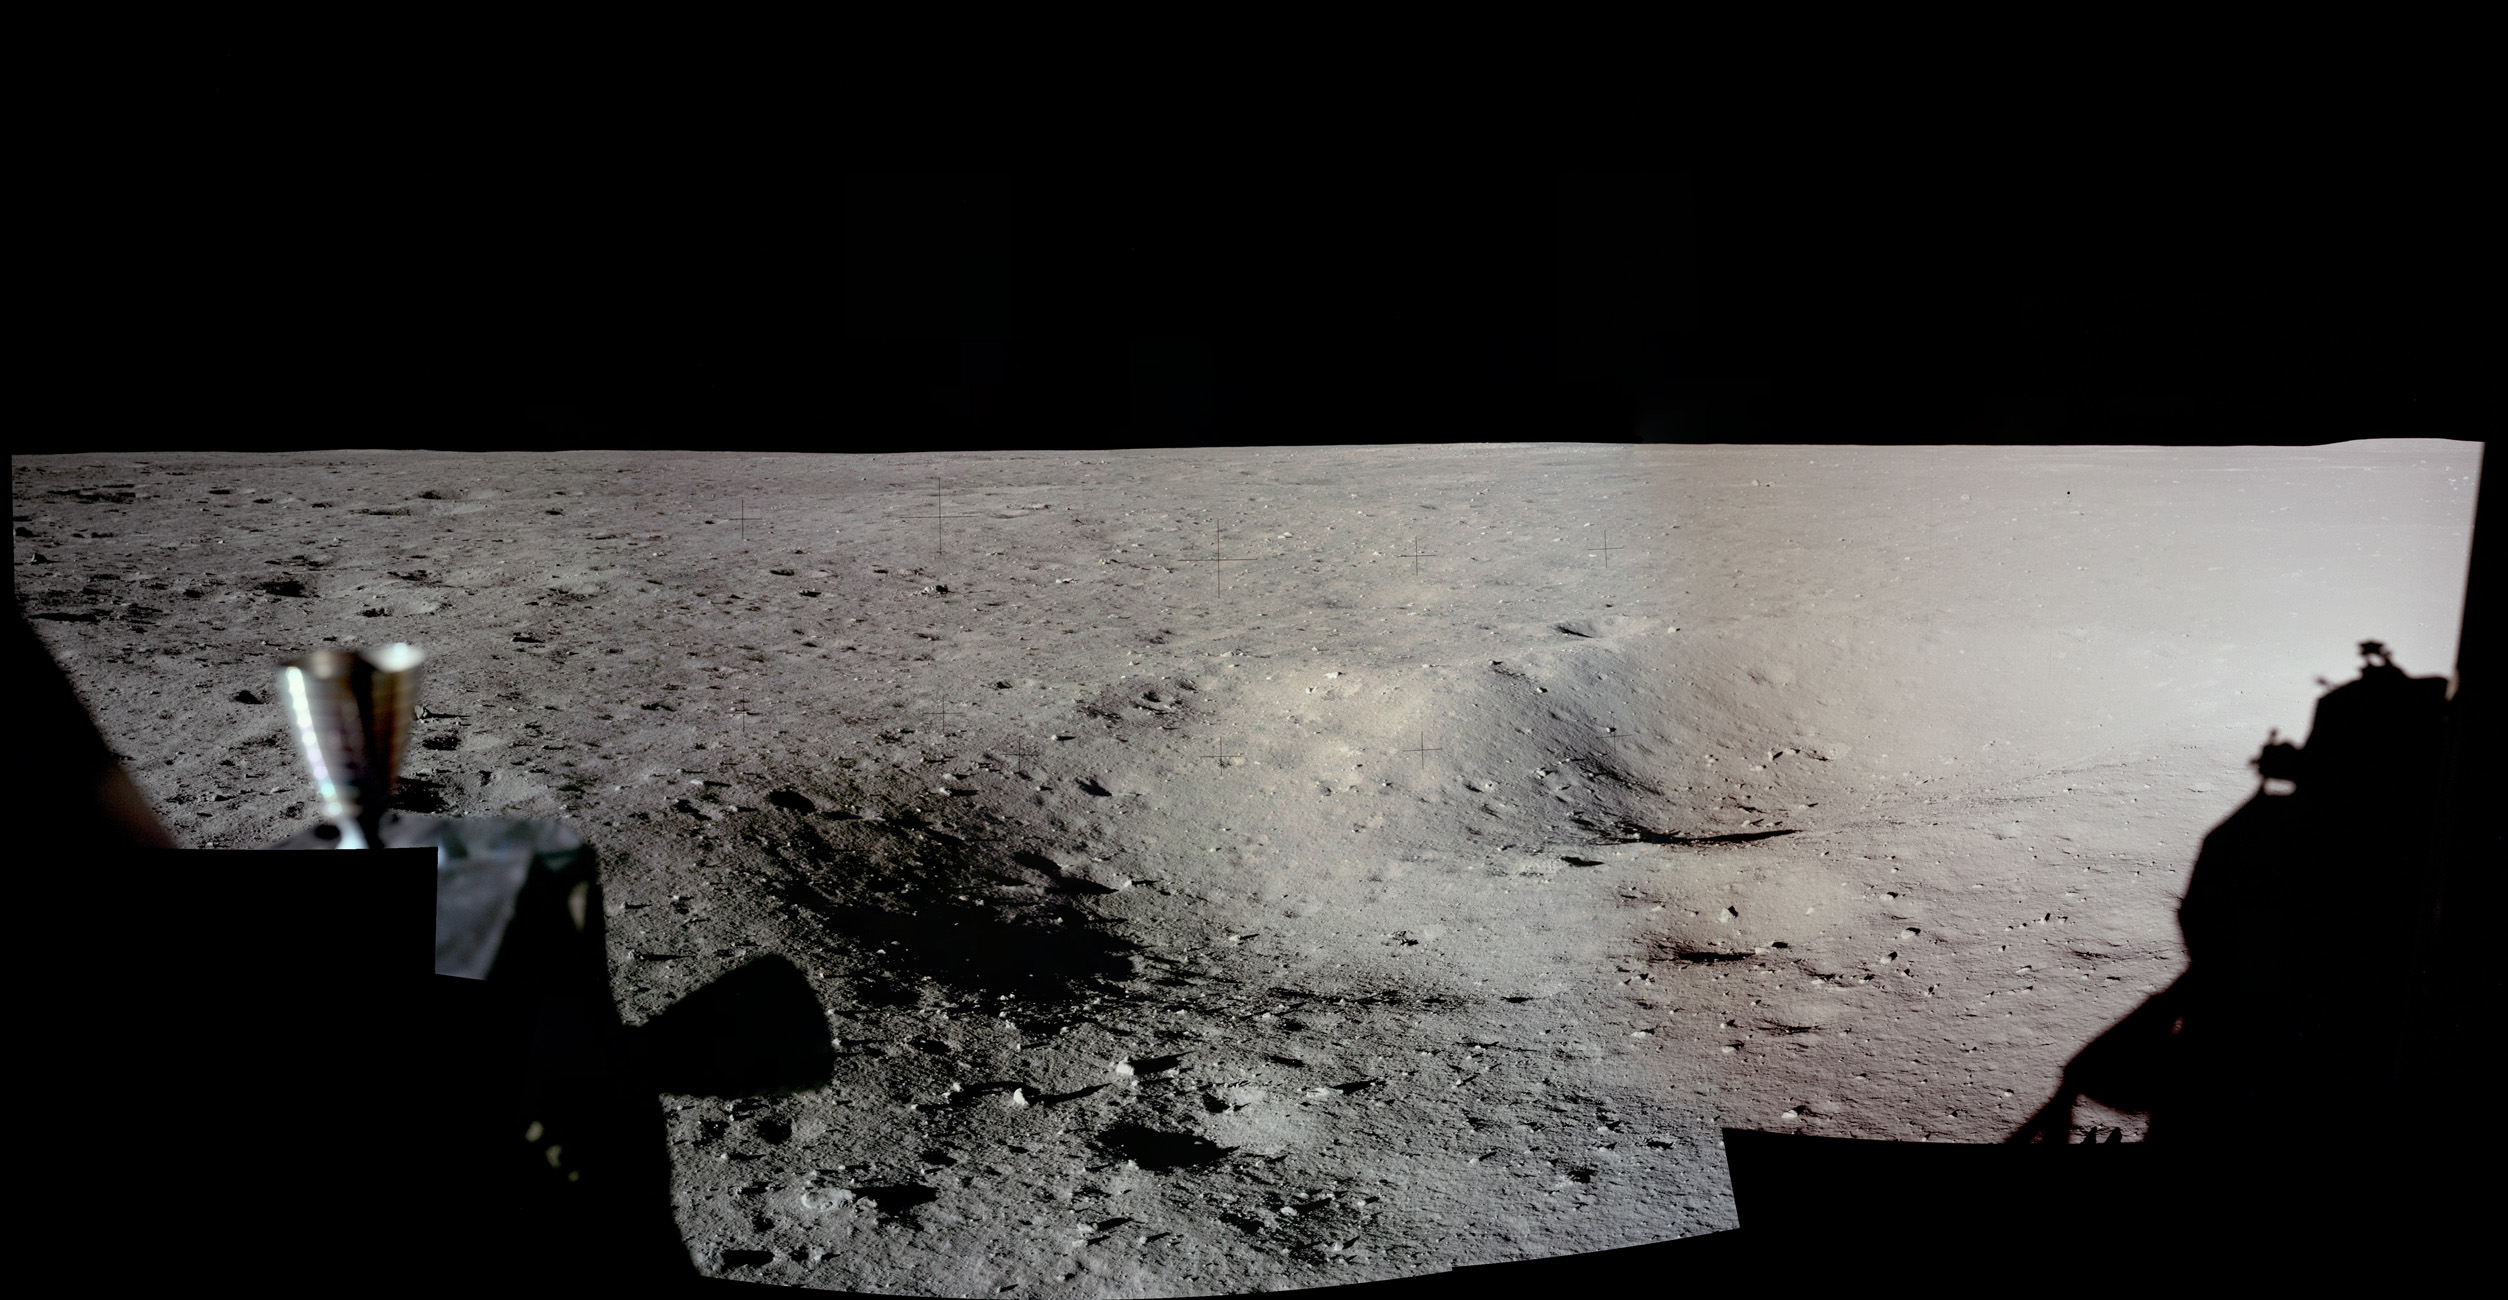 La NASA a publié une photo impressionnante de la Lune faisant un panorama des astronautes